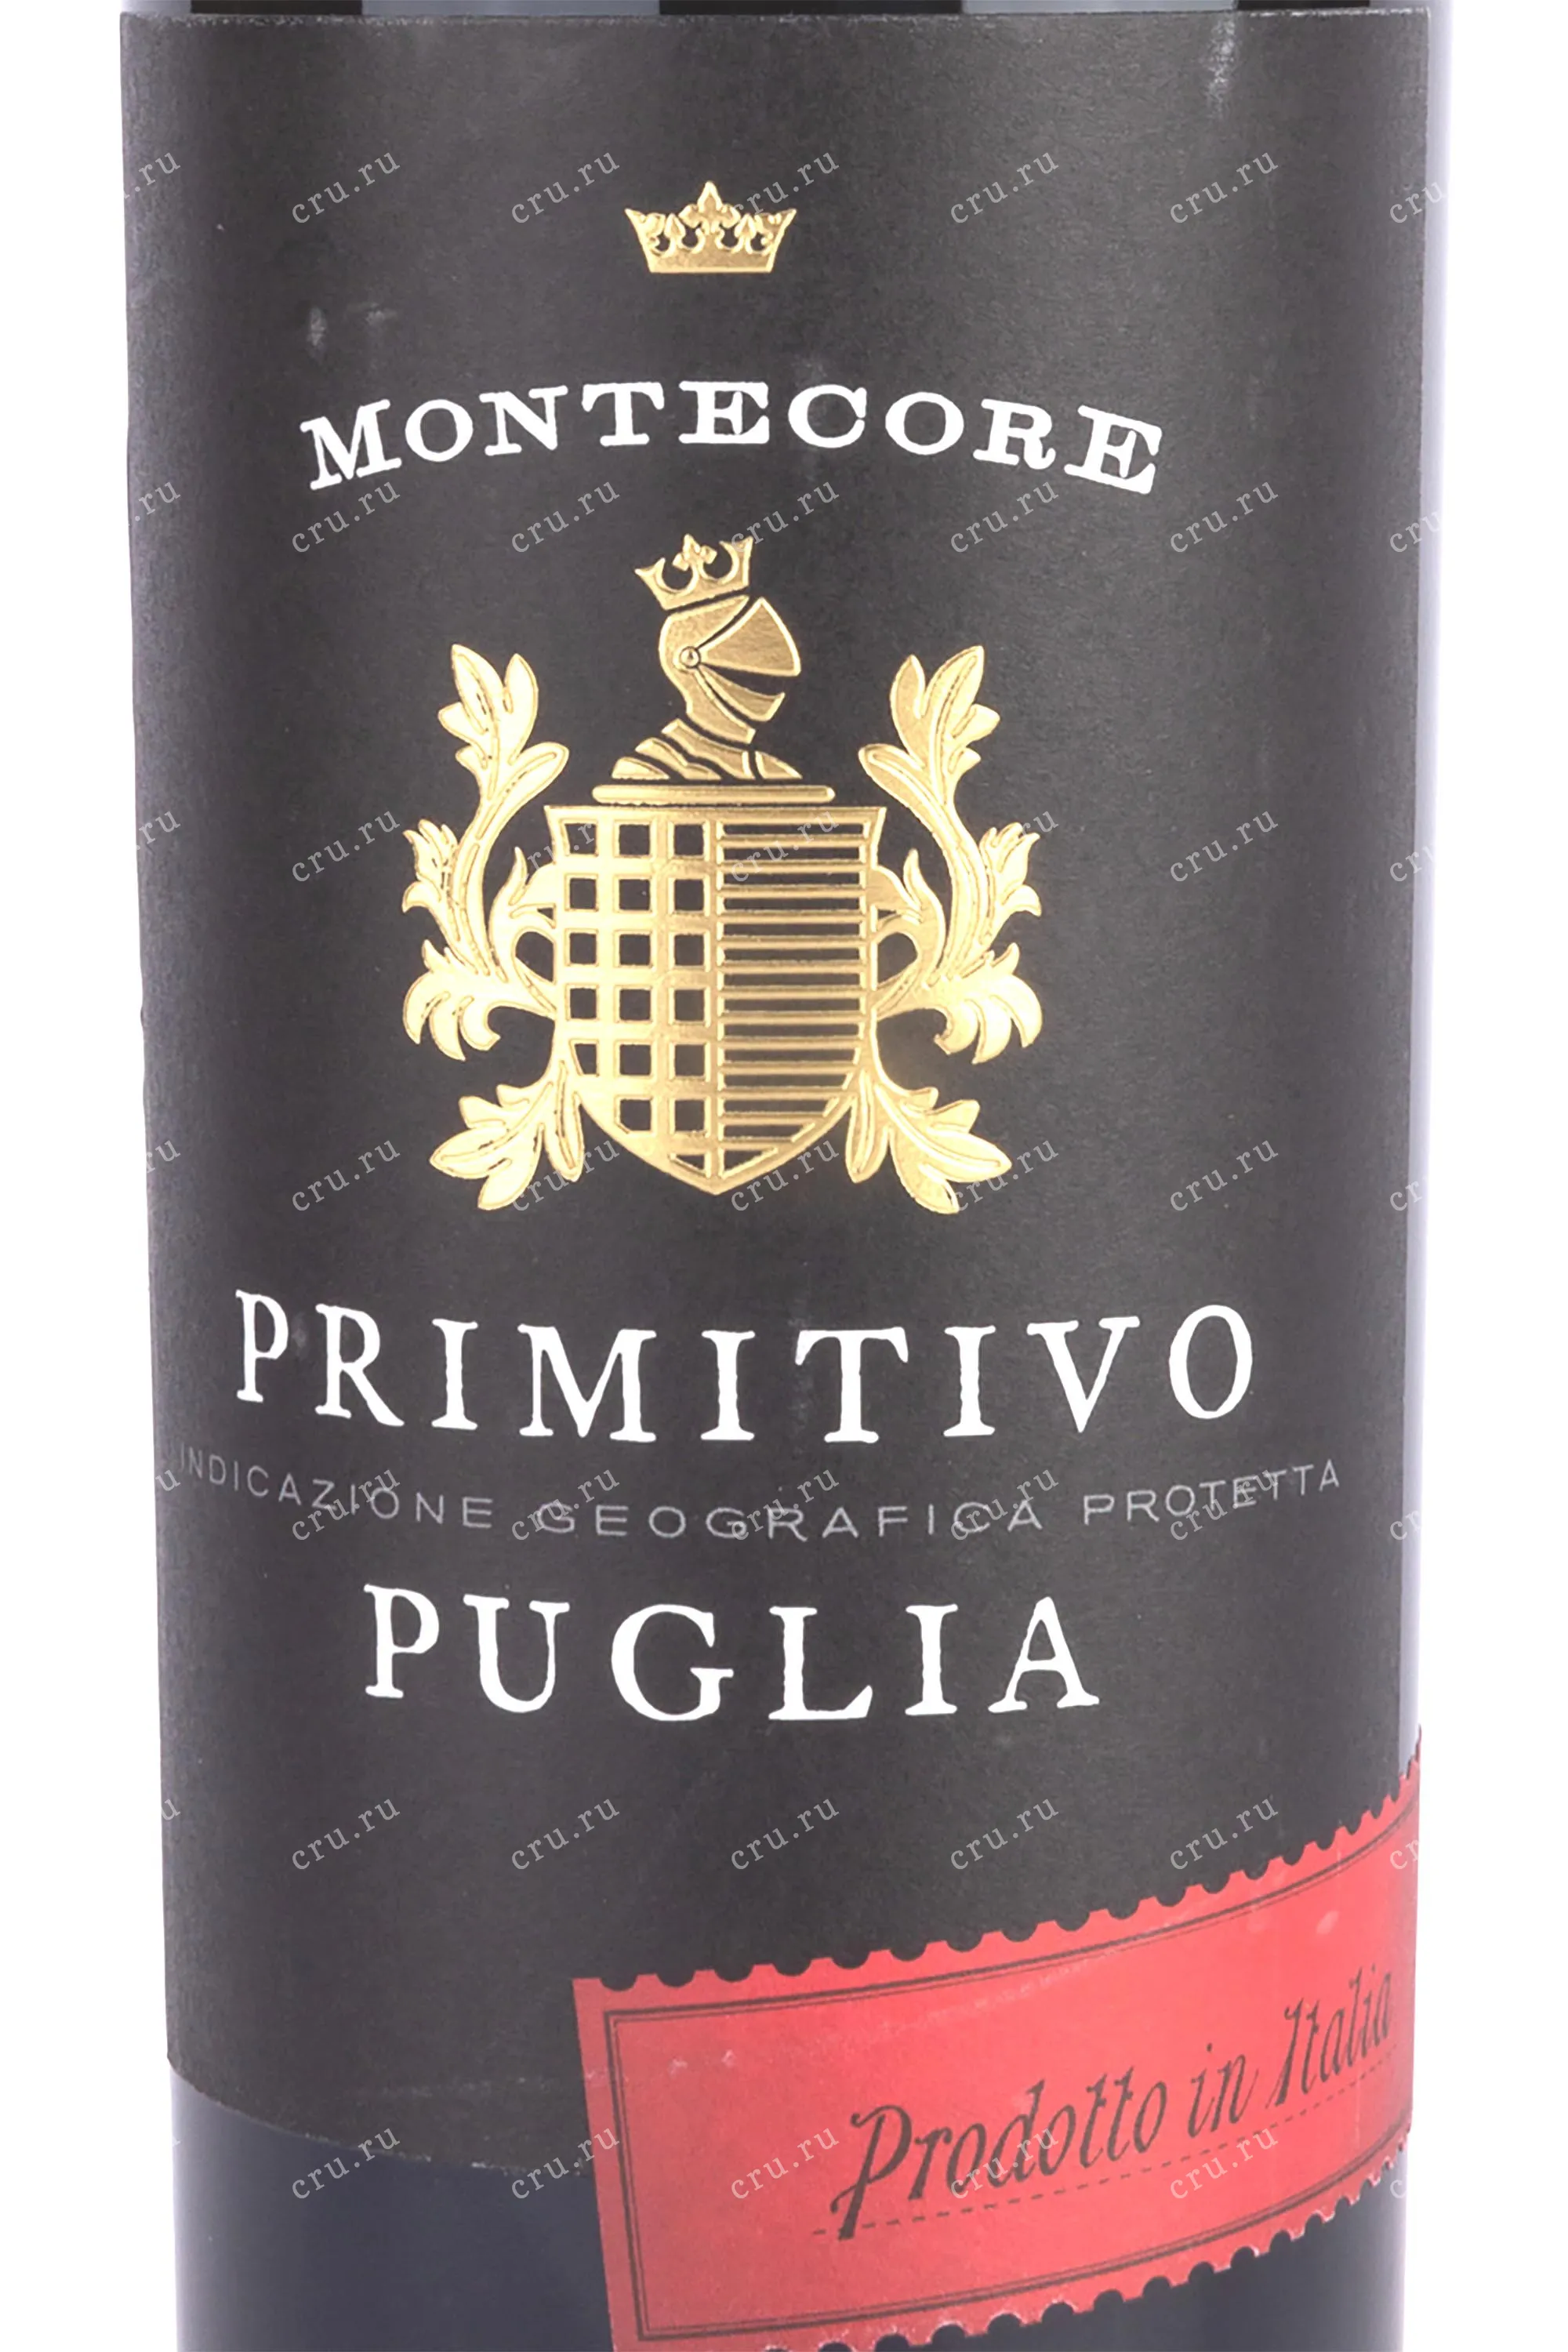 Primitivo Puglia Montecore 0.75 л купить - Итальянское вино Примитиво Пулия  Монтекоре цена в магазине